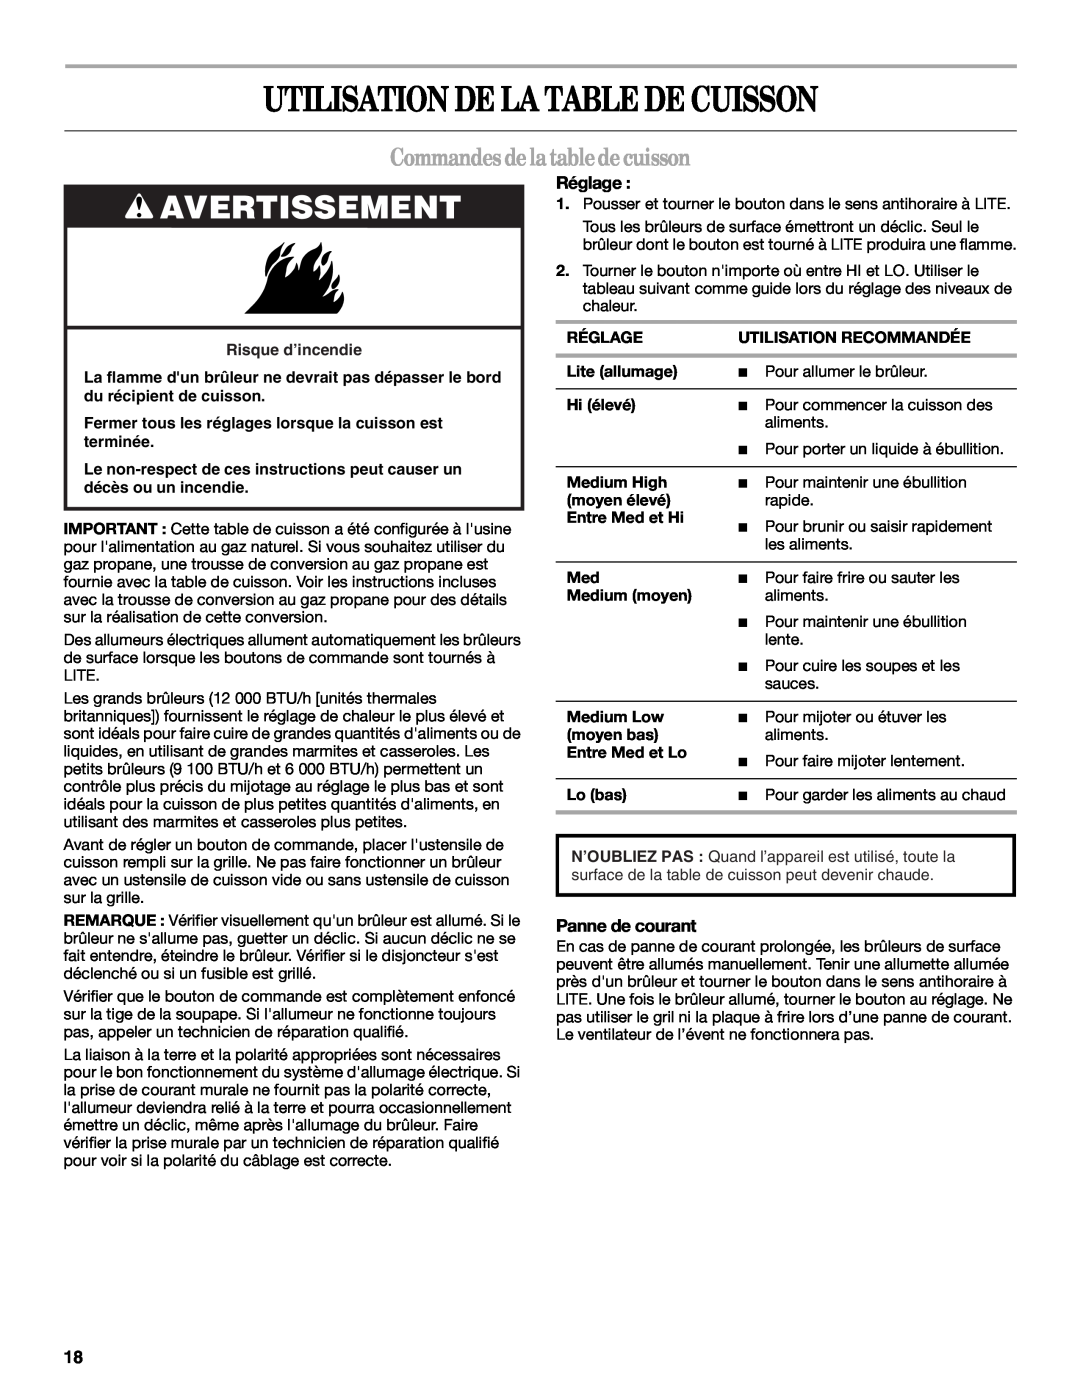 Whirlpool GLS3675, GLS3074 manual Utilisation De La Table De Cuisson, Avertissement, Commandesdelatabledecuisson, Réglage 